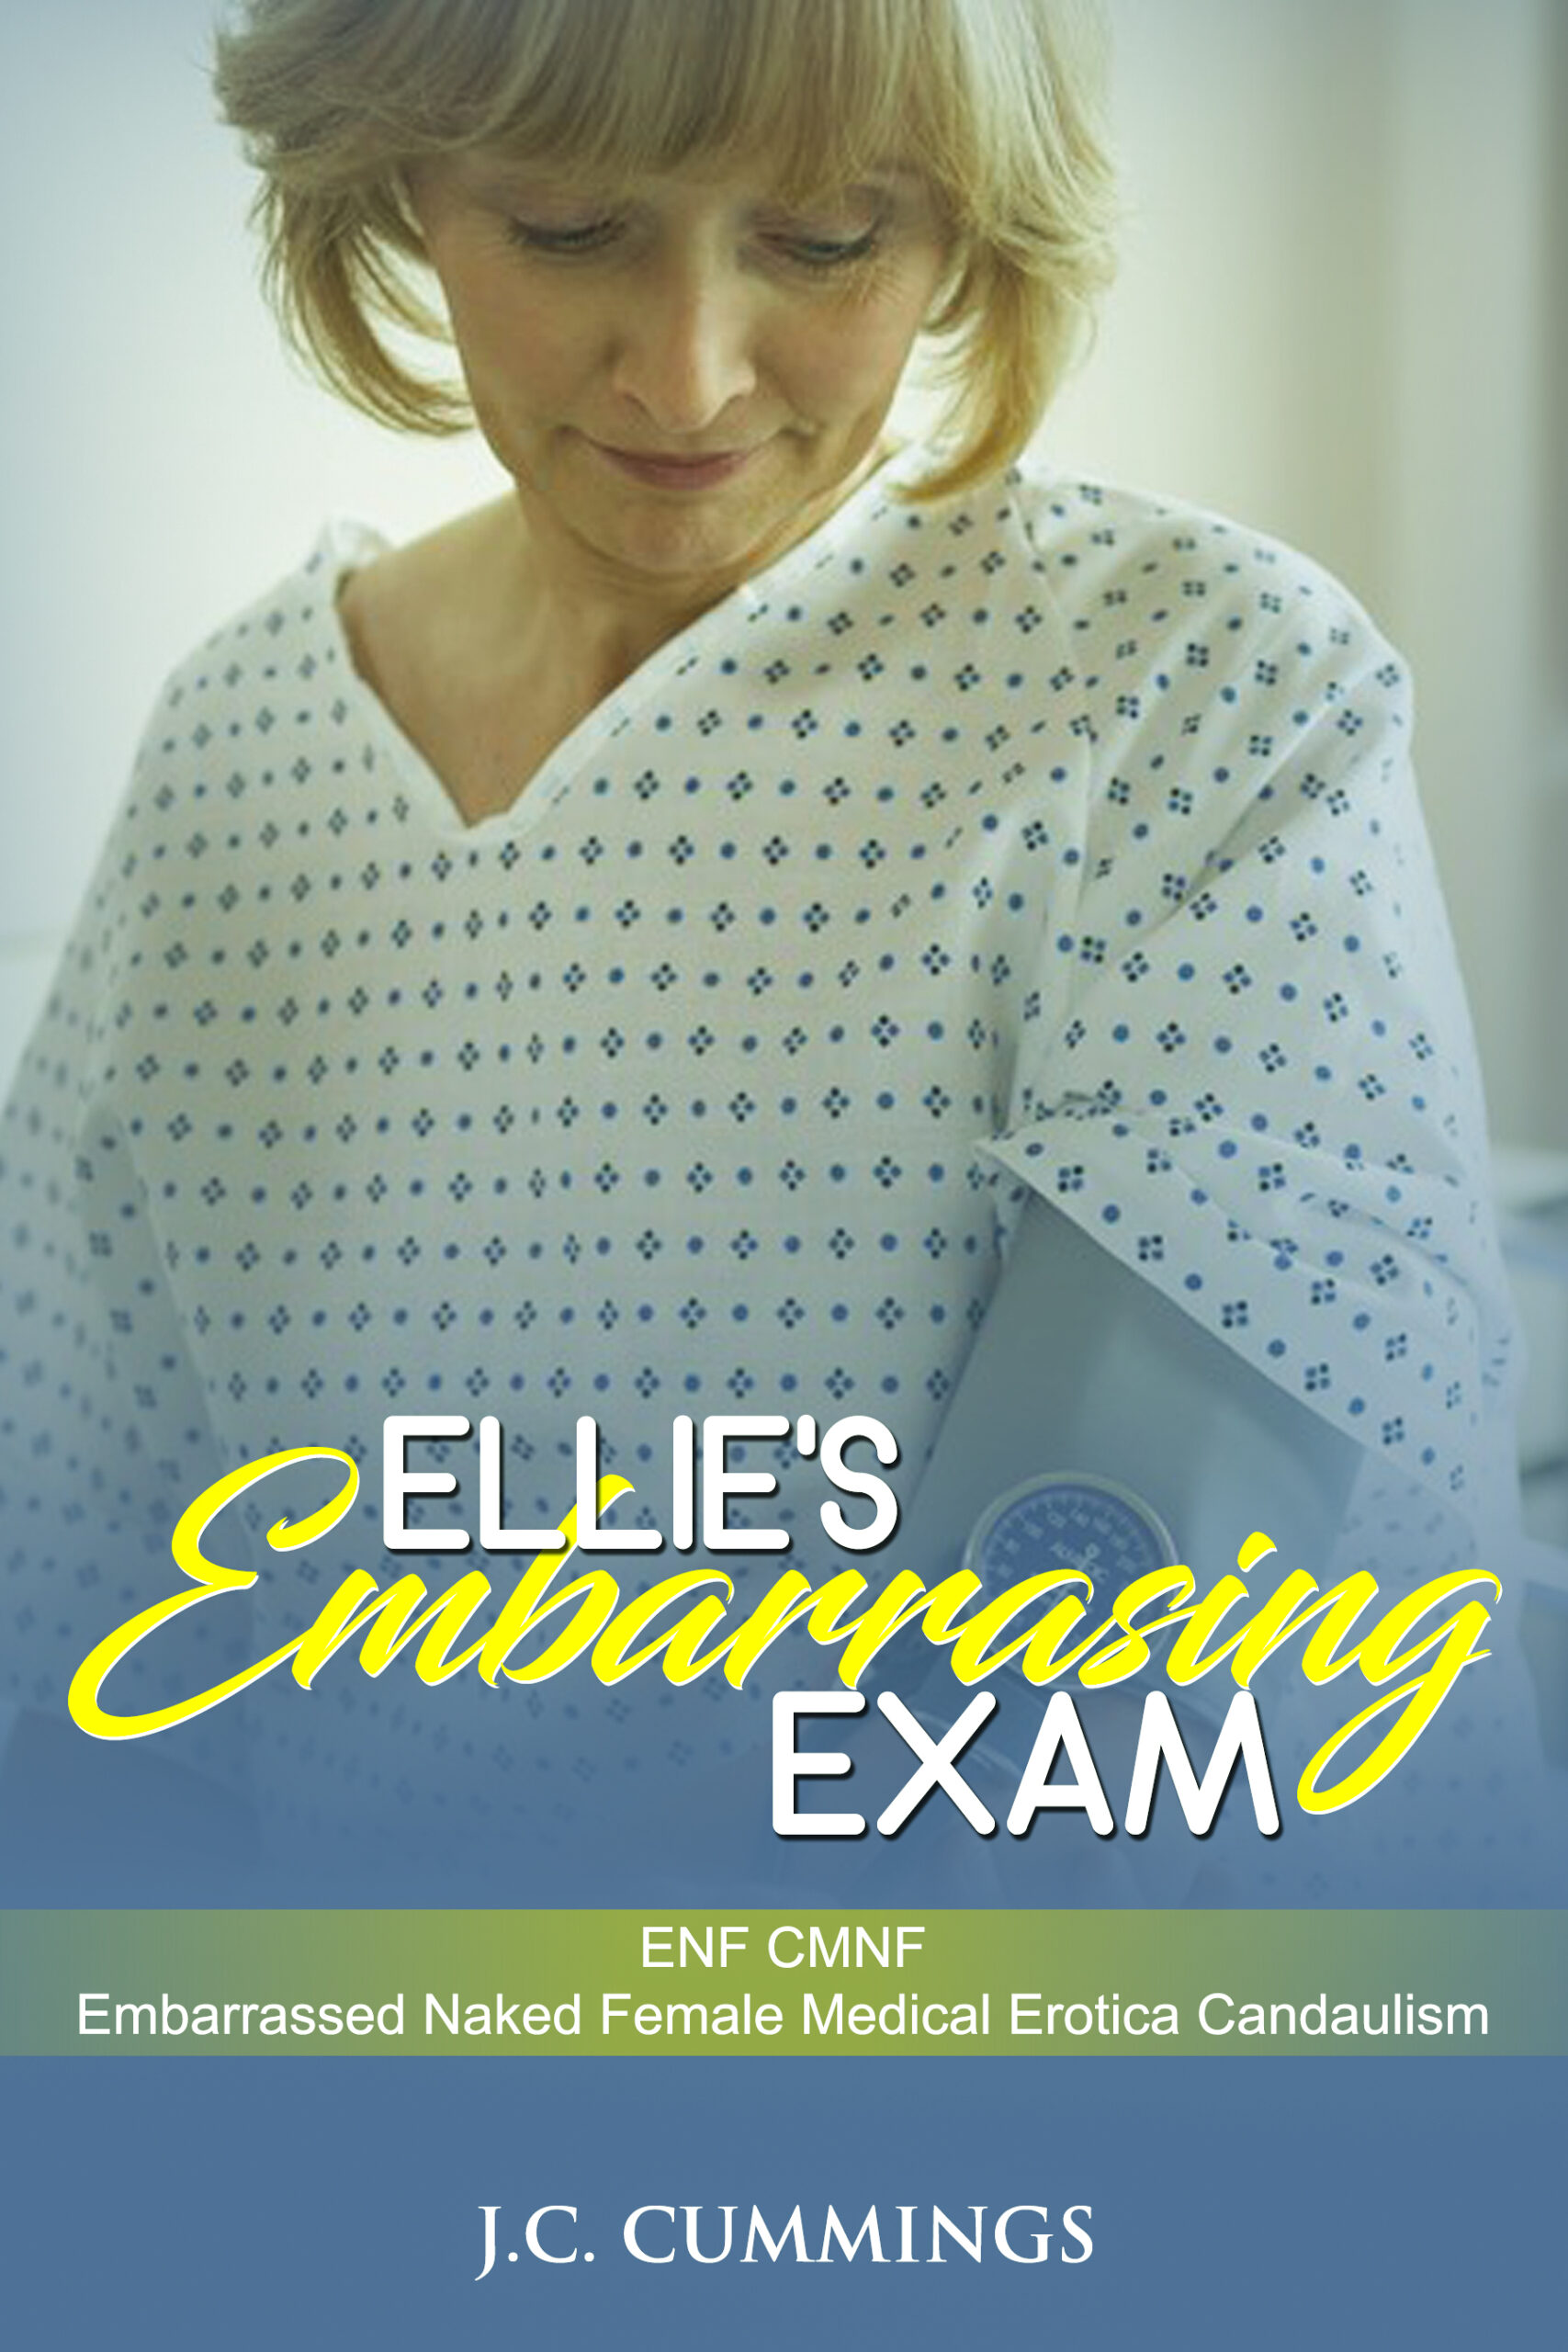 FREE: Ellie’s Embarrassing Exam by J.C. Cummings